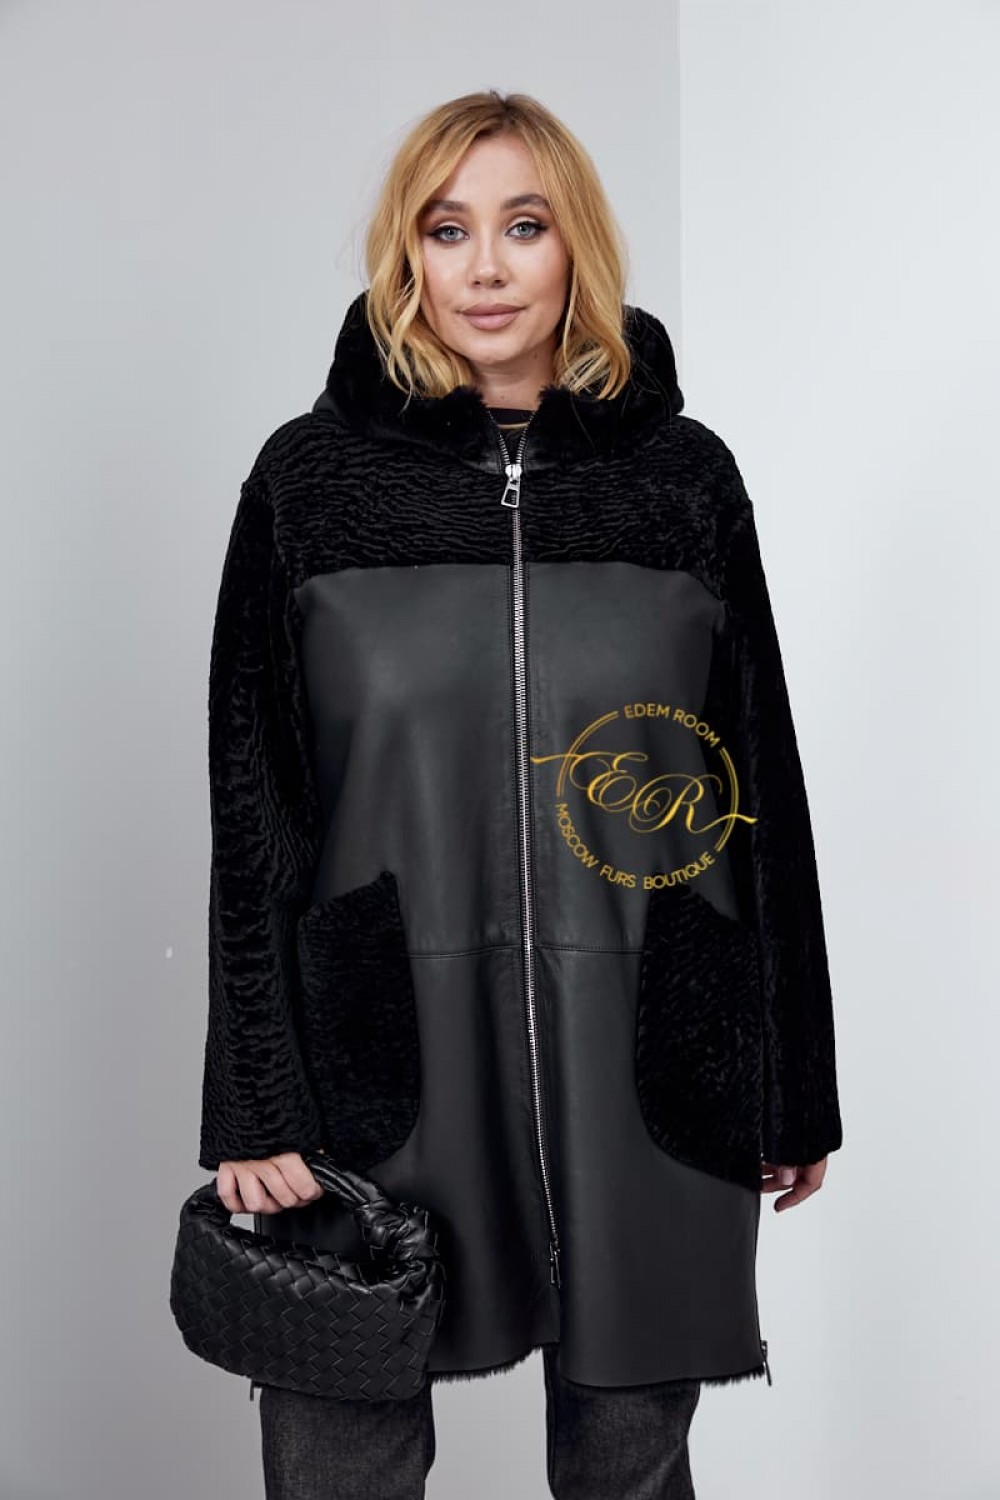 Чёрная облегчённая дублёнка - пальто для женщин